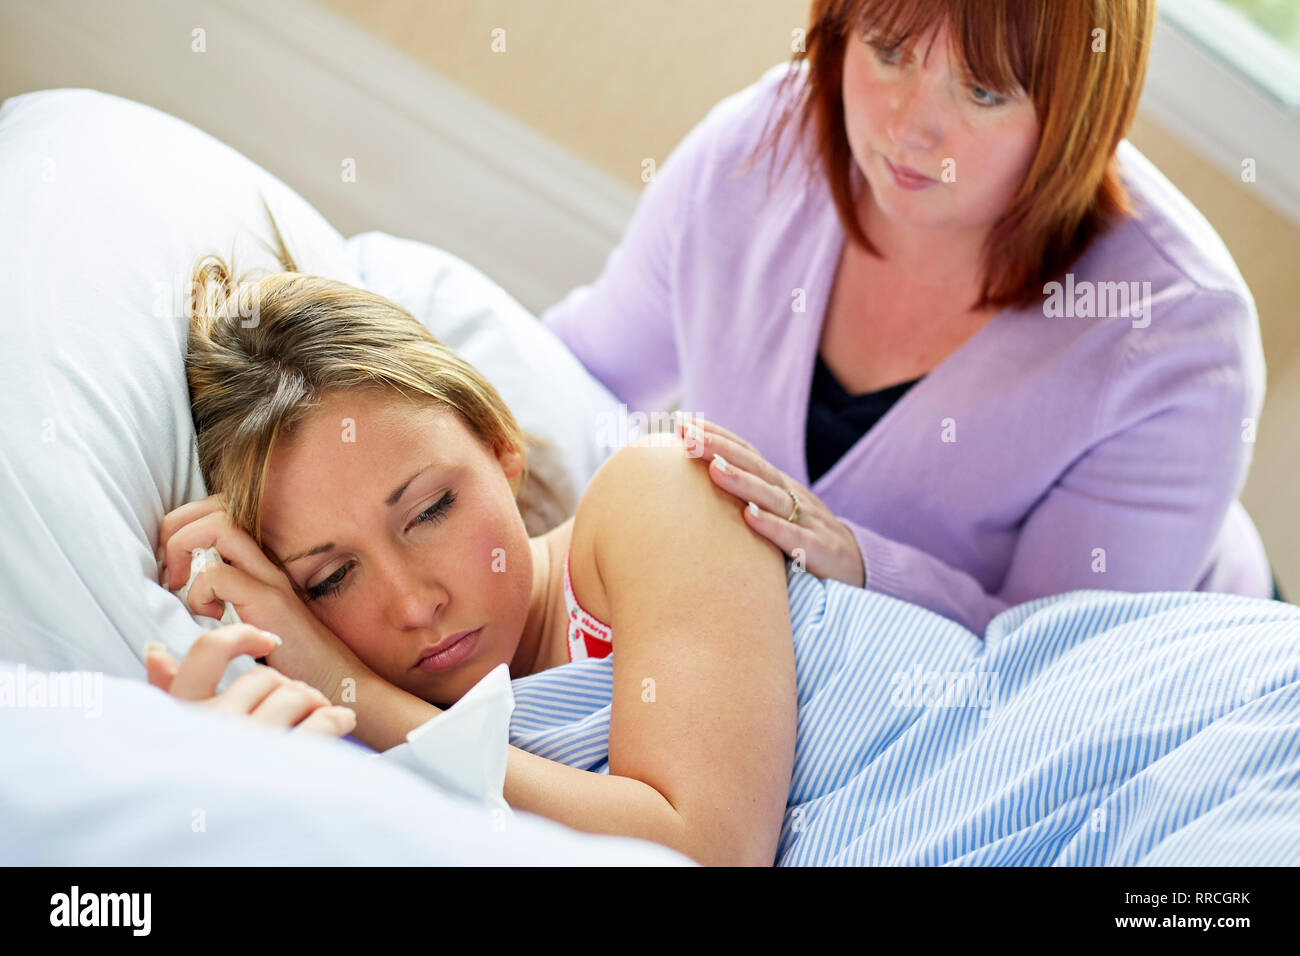 Adolescente mis au lit avec la grippe Banque D'Images